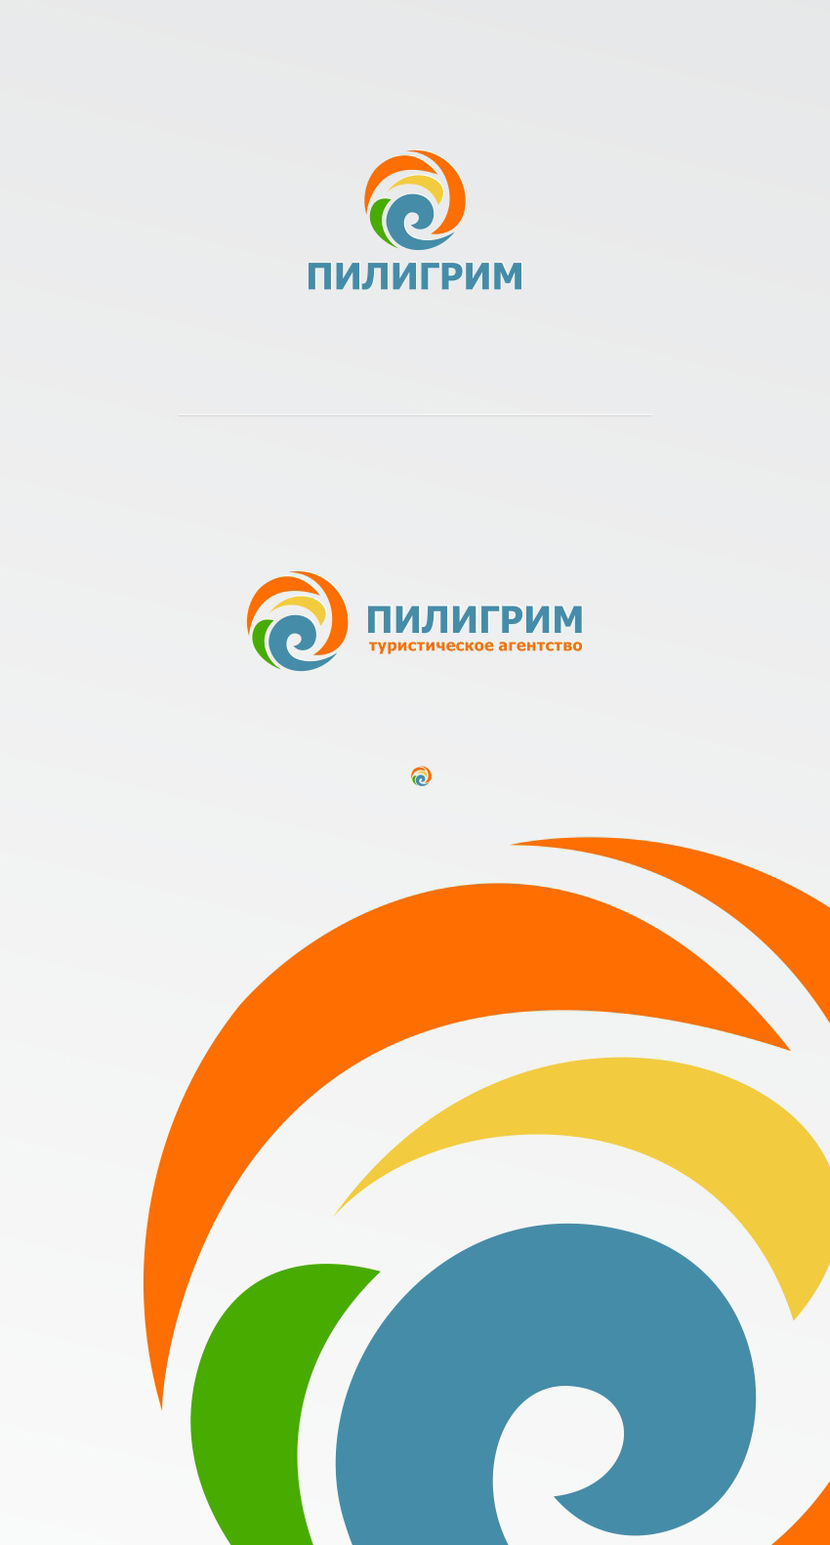 Пилигрим - Логотип для туроператора